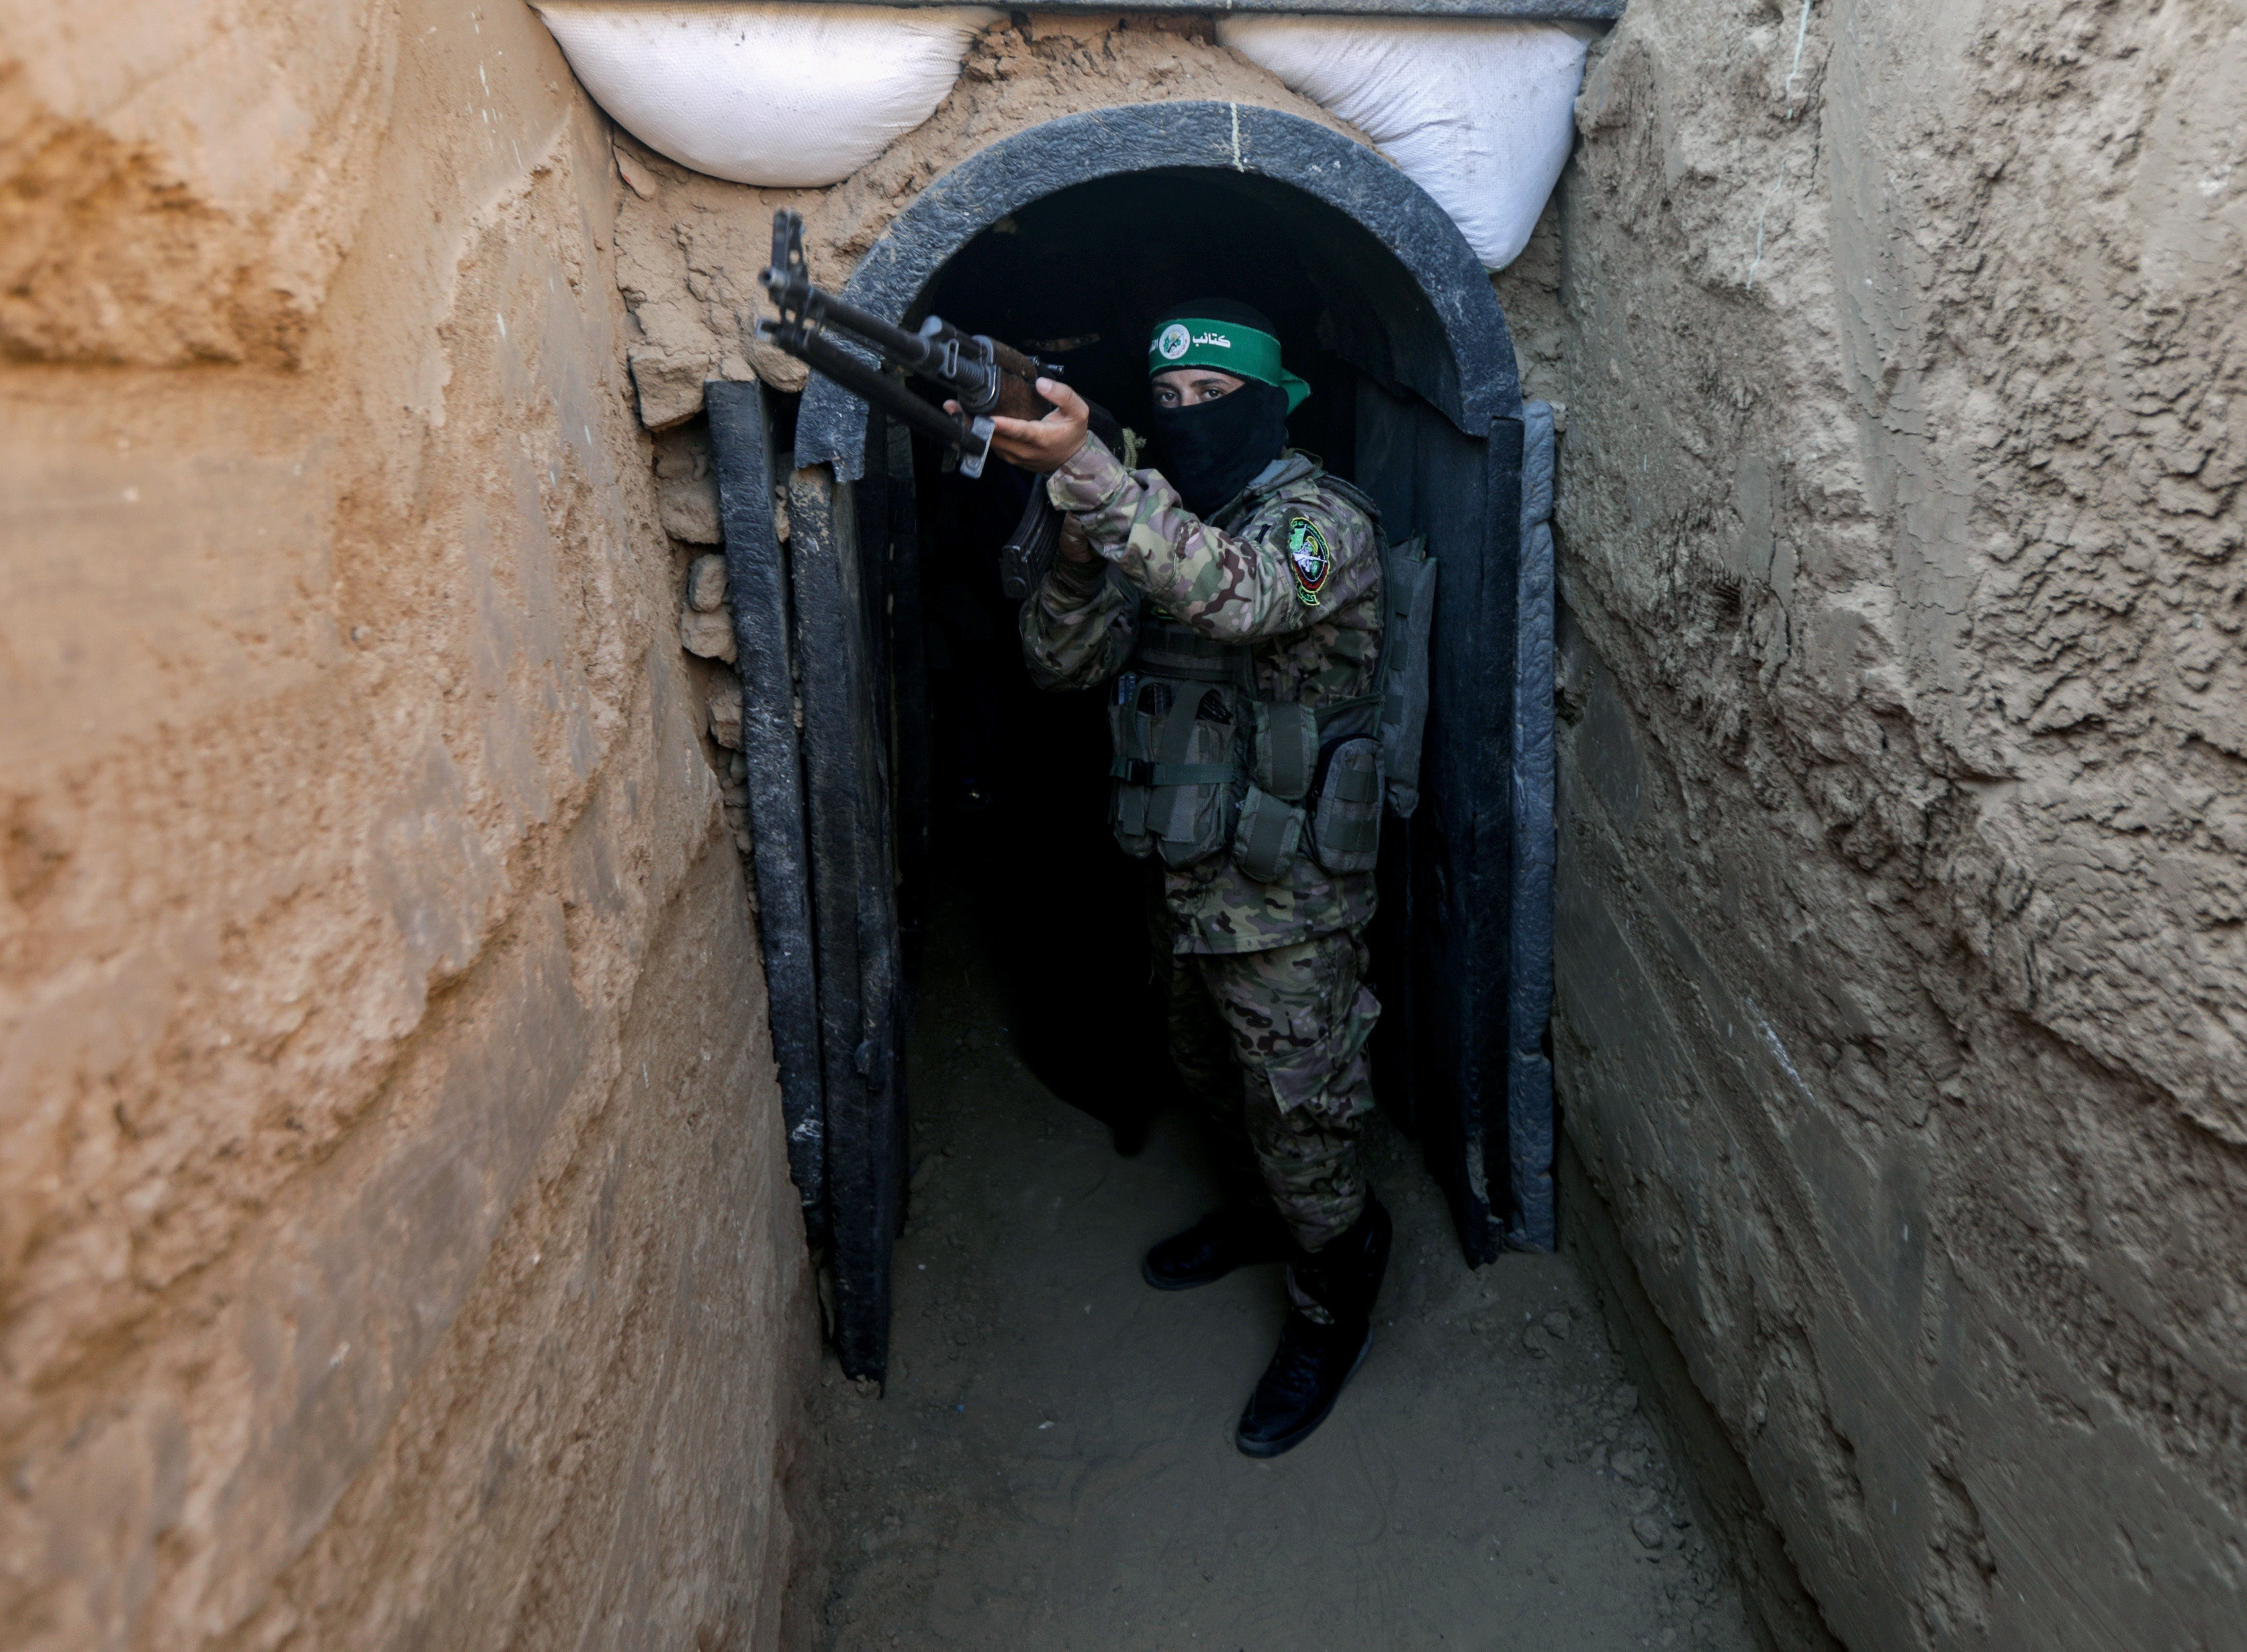 Ein Kämpfer von Izz al-Din al-Qassam steht während einer Ausstellung von Waffen, Raketen und schwerer Ausrüstung für den militärischen Flügel der Hamas vor einem Tunnel.